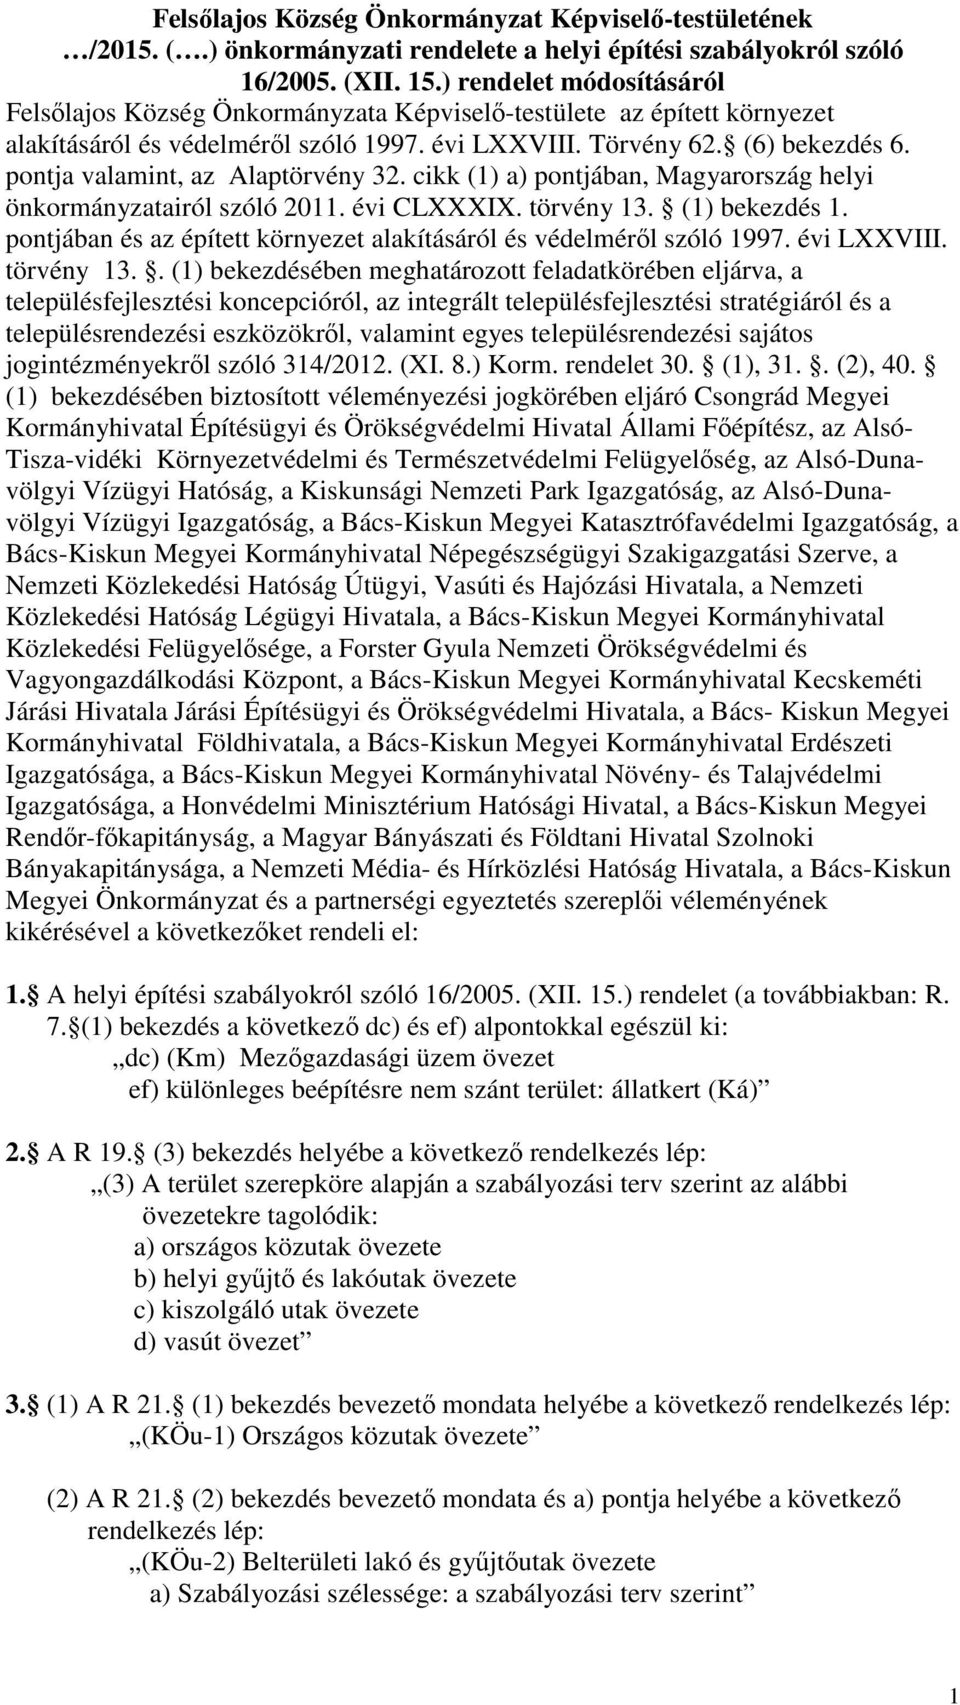 pontja valamint, az Alaptörvény 32. cikk (1) a) pontjában, Magyarország helyi önkormányzatairól szóló 2011. évi CLXXXIX. törvény 13. (1) bekezdés 1.